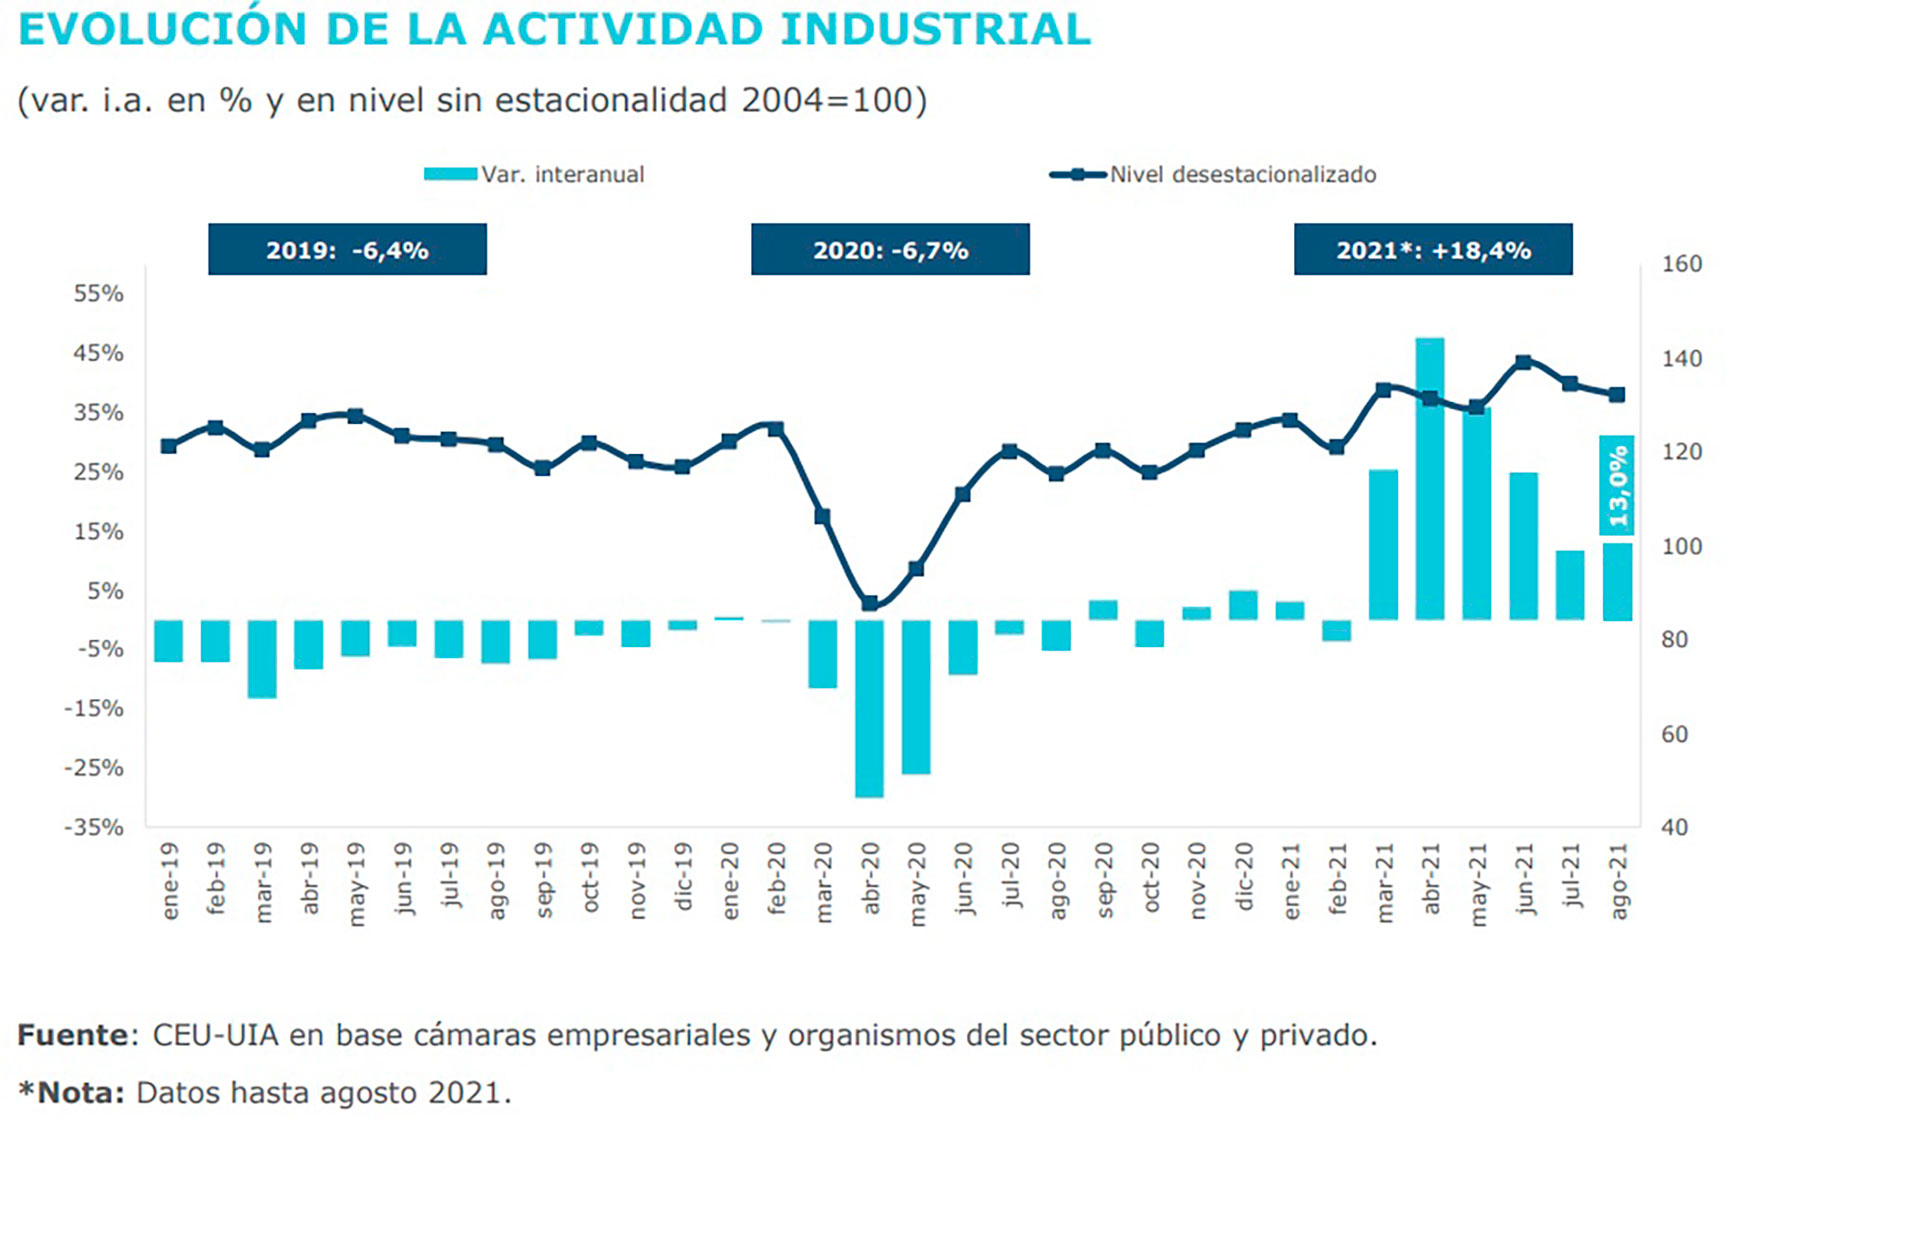 Fuente: Unión Industrial Argentina (UIA)